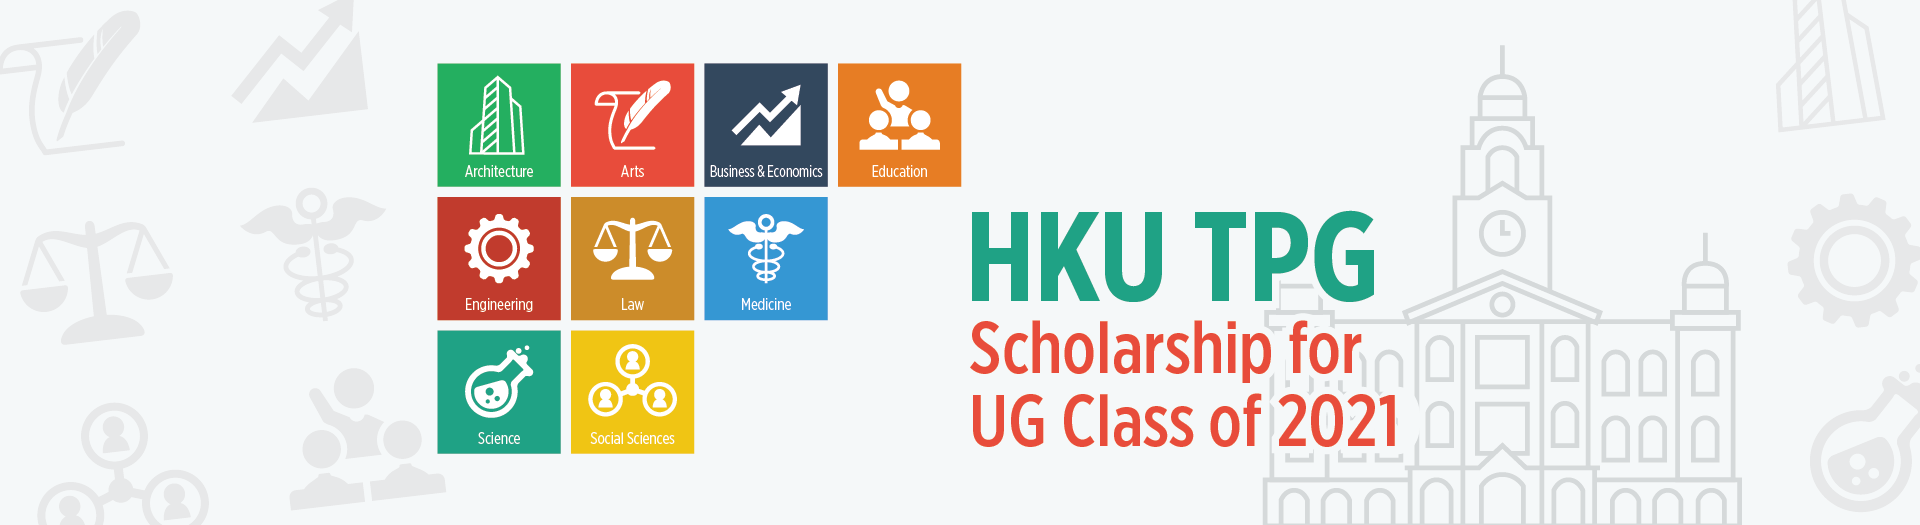 HKU TPG Scholarship UG Class 2021